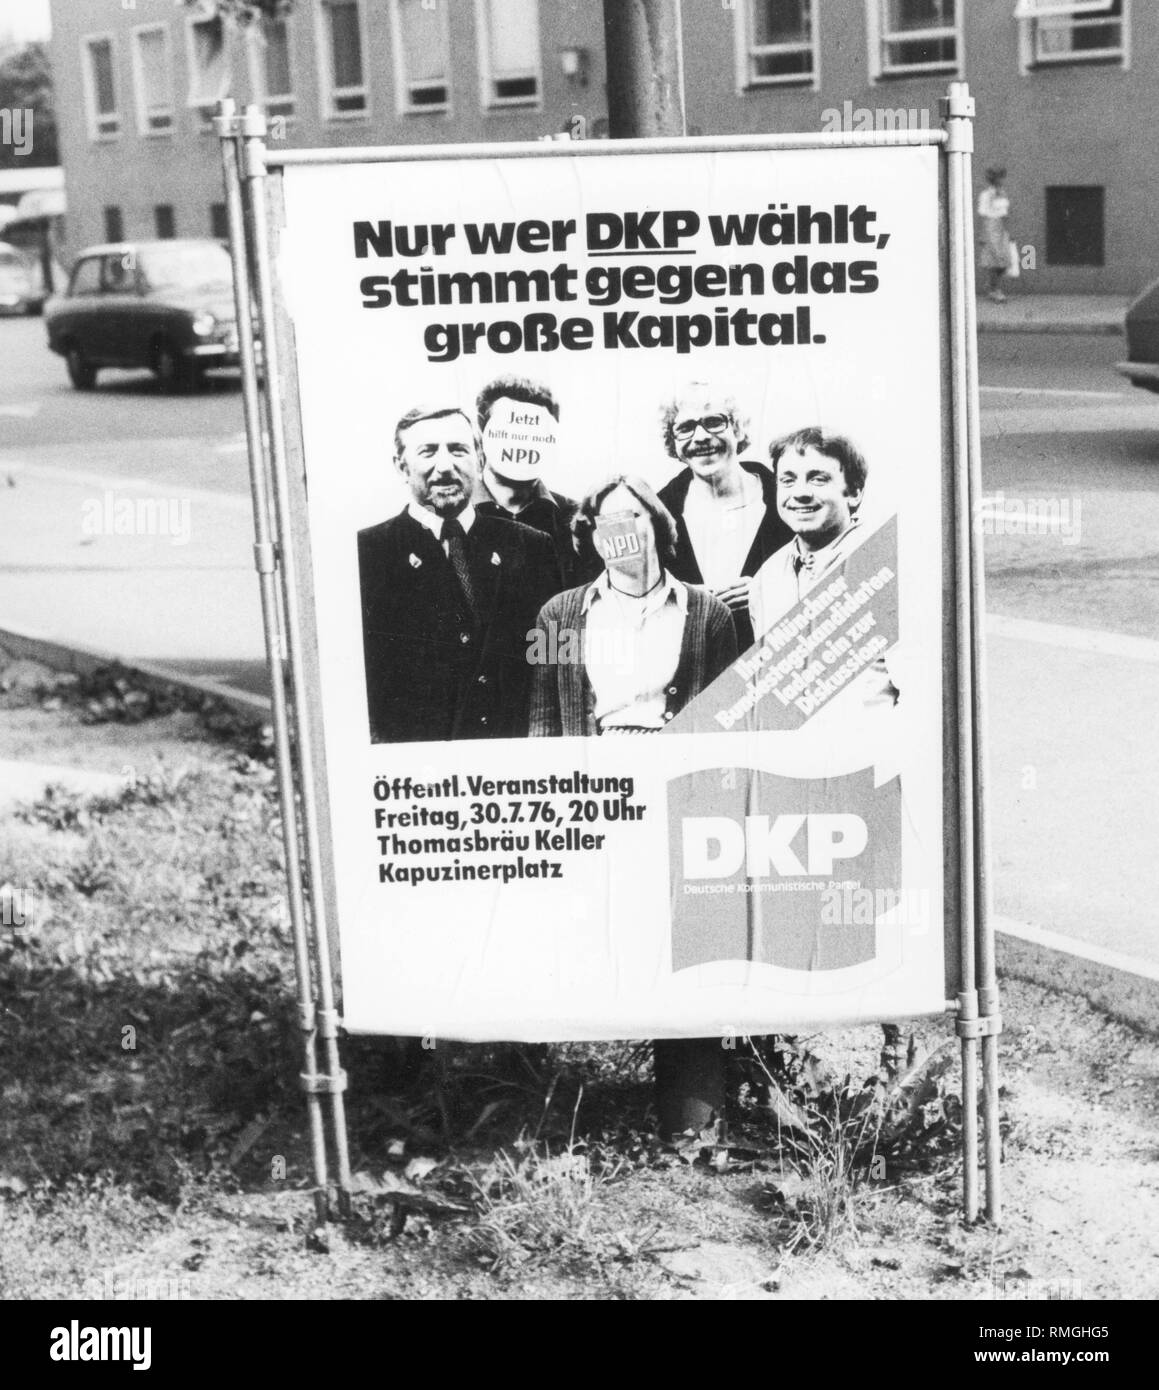 Il Cartellone elettorale del partito comunista tedesco (DKP) con lo slogan "Solo chi votare su DKP, votare contro il grande capitale." e l'annuncio di un evento di campagna in Thomasbraeu Keller su Kapuzzinerplatz era coperto da parte dei sostenitori del partito nazionalista di Germania (NPD) con adesivi "ora solo il NPD aiuta' e 'NPD' Foto Stock